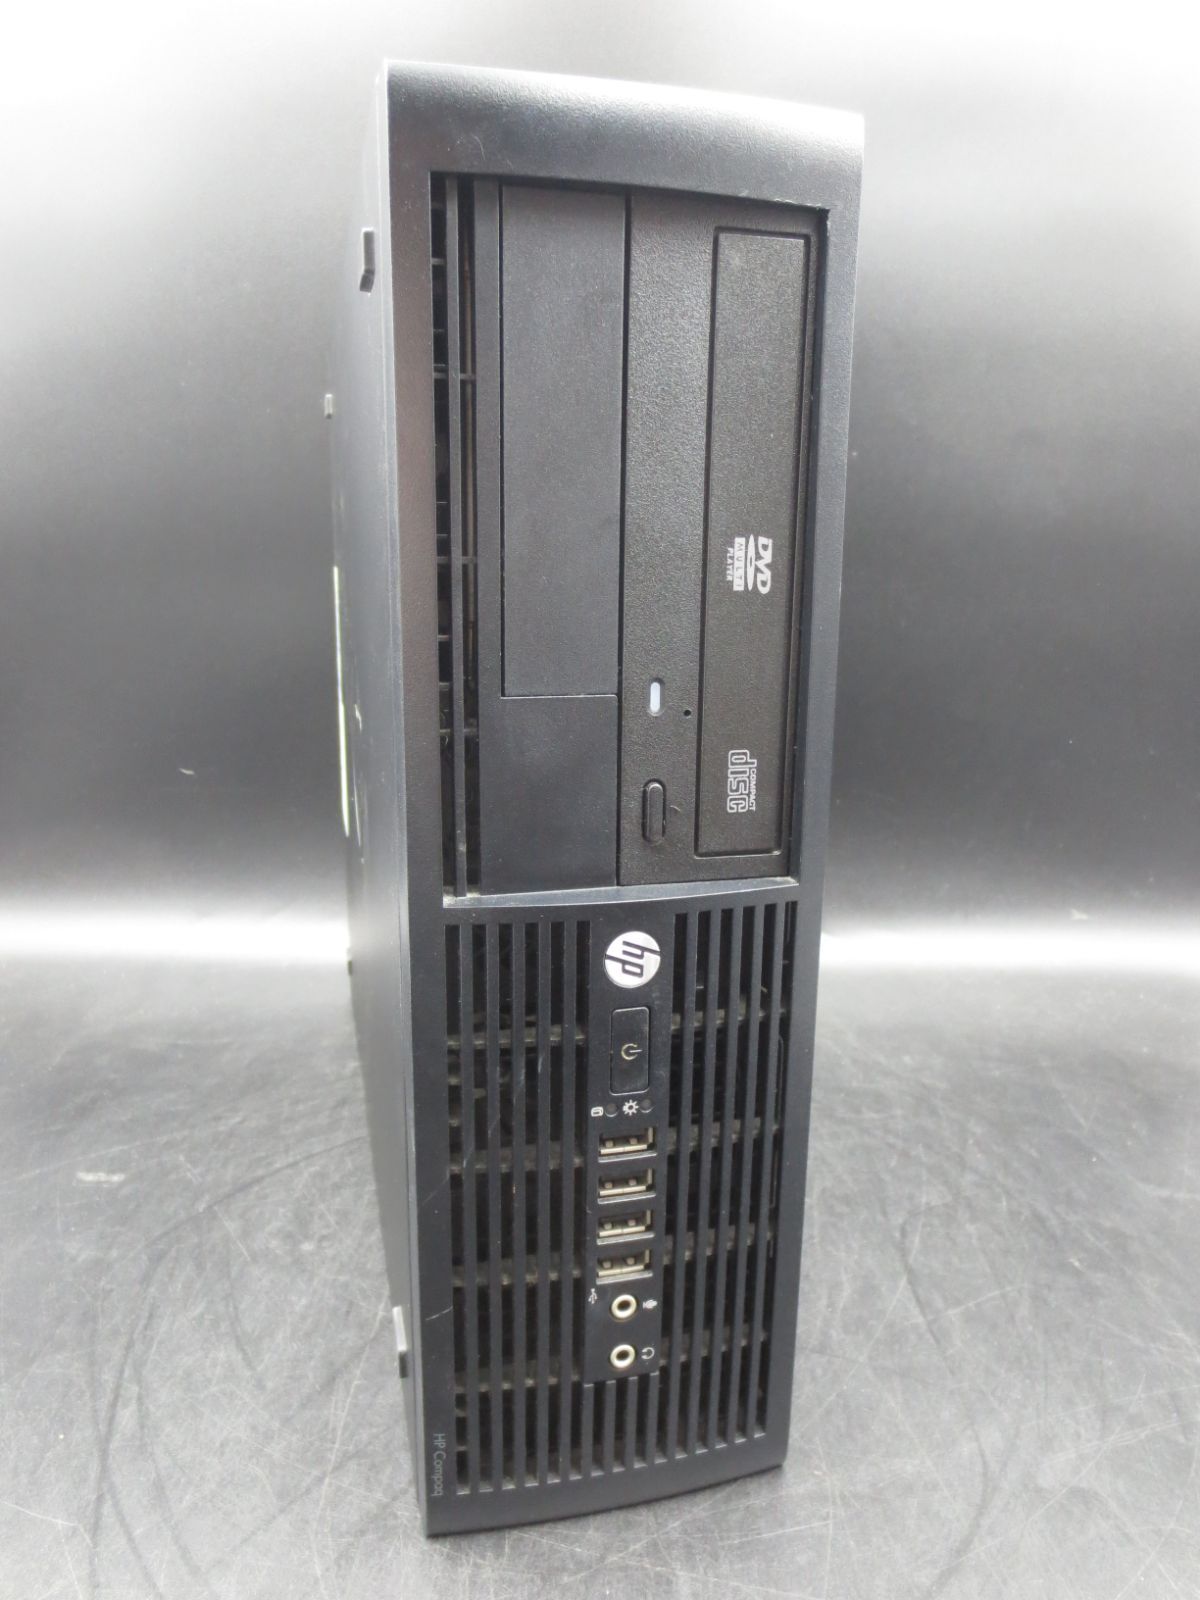 デスクトップPC HP compaq Pro 4300SFF(i3/8GB)